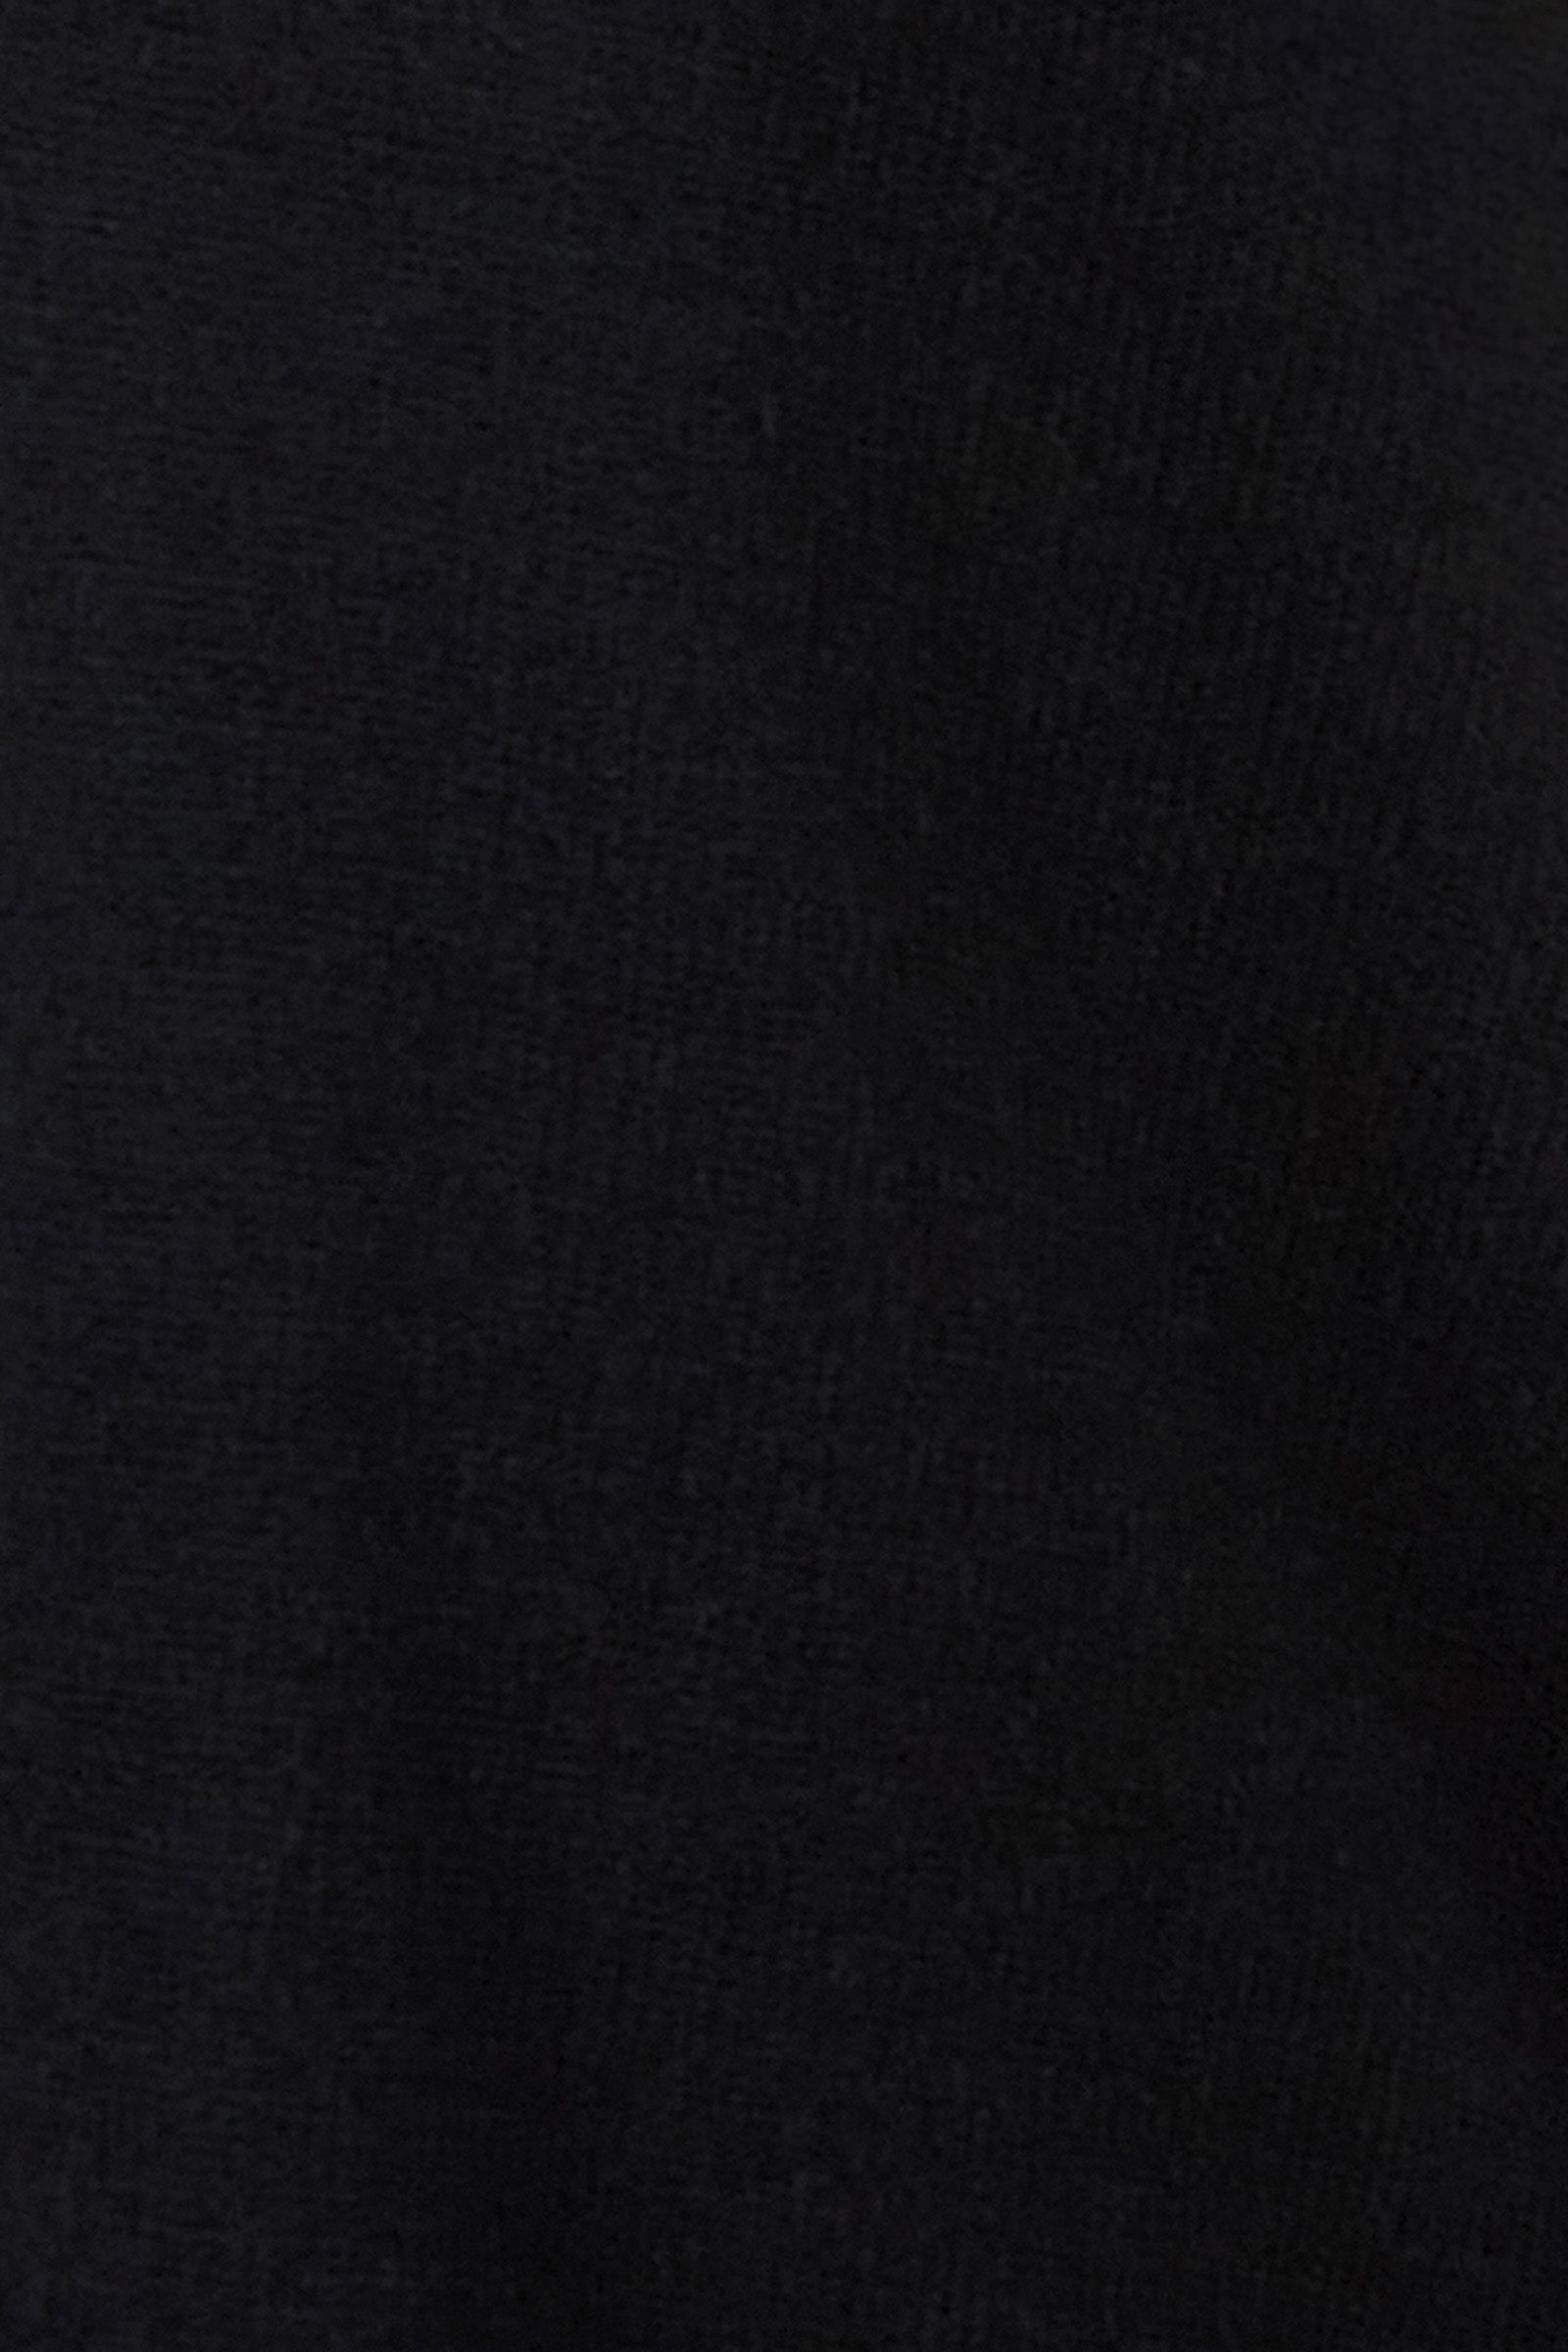 Nakako Cardigan - Ebony - eb&ive Clothing - Knit Cardigan Long One Size